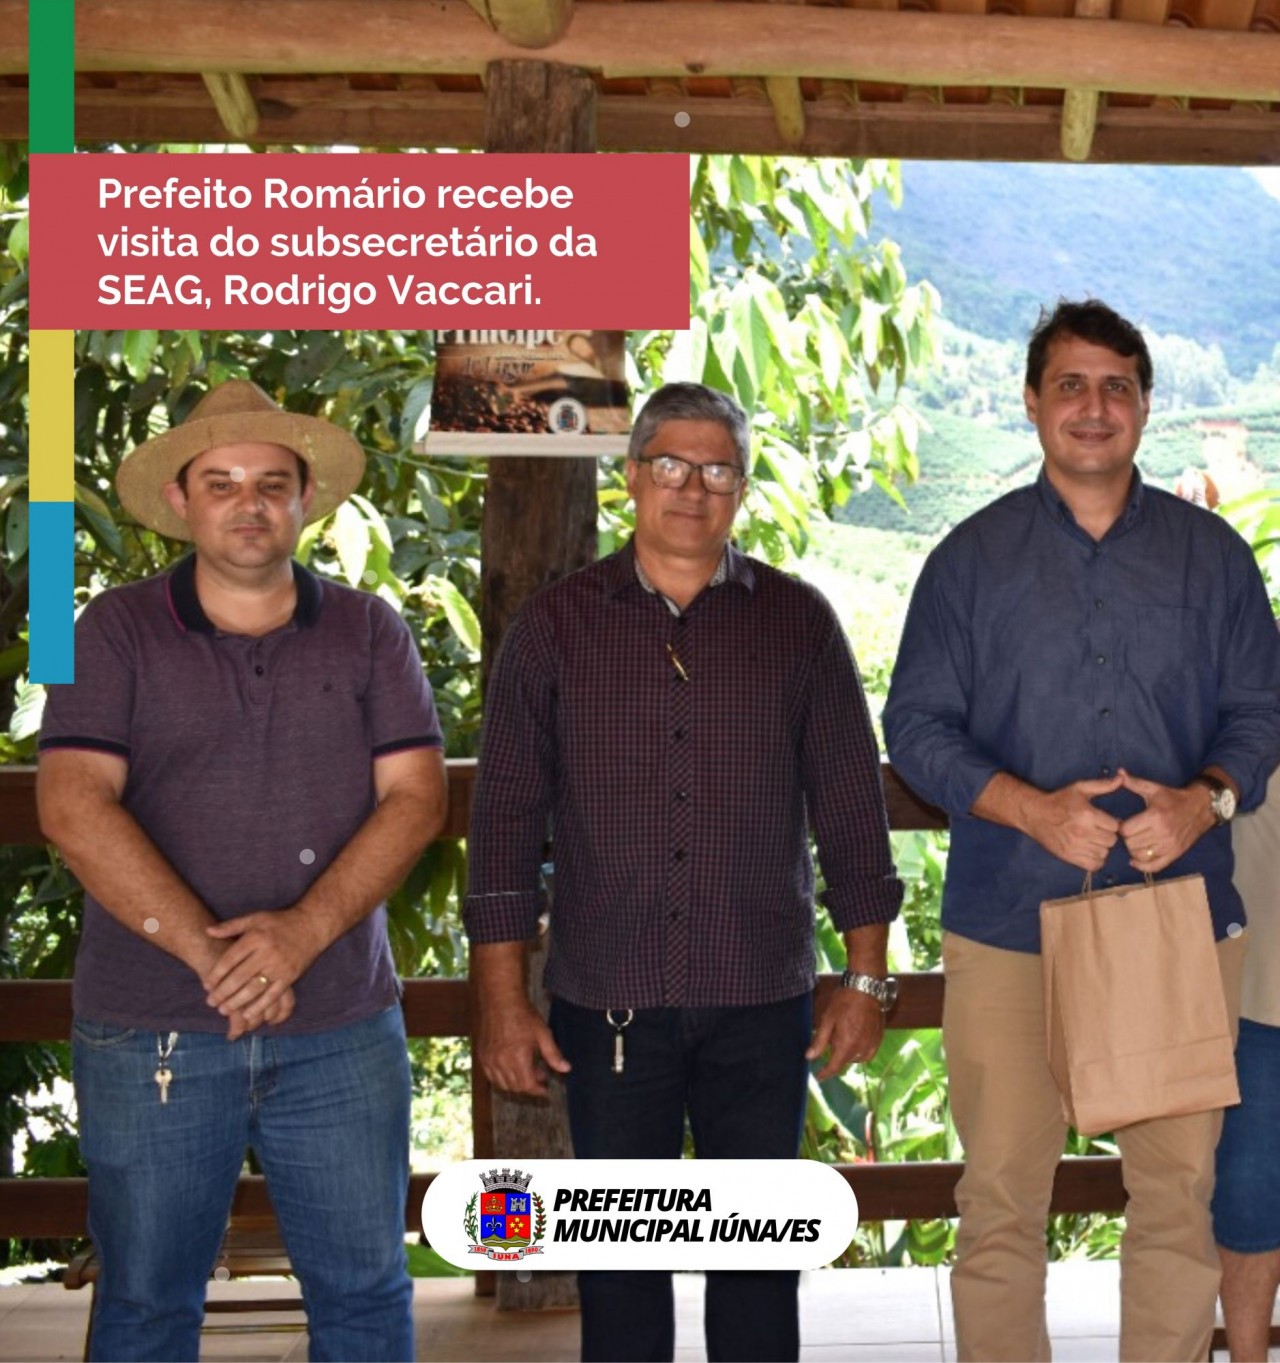 Prefeito Romário recebe visita do subsecretário da SEAG, Rodrigo Vaccari